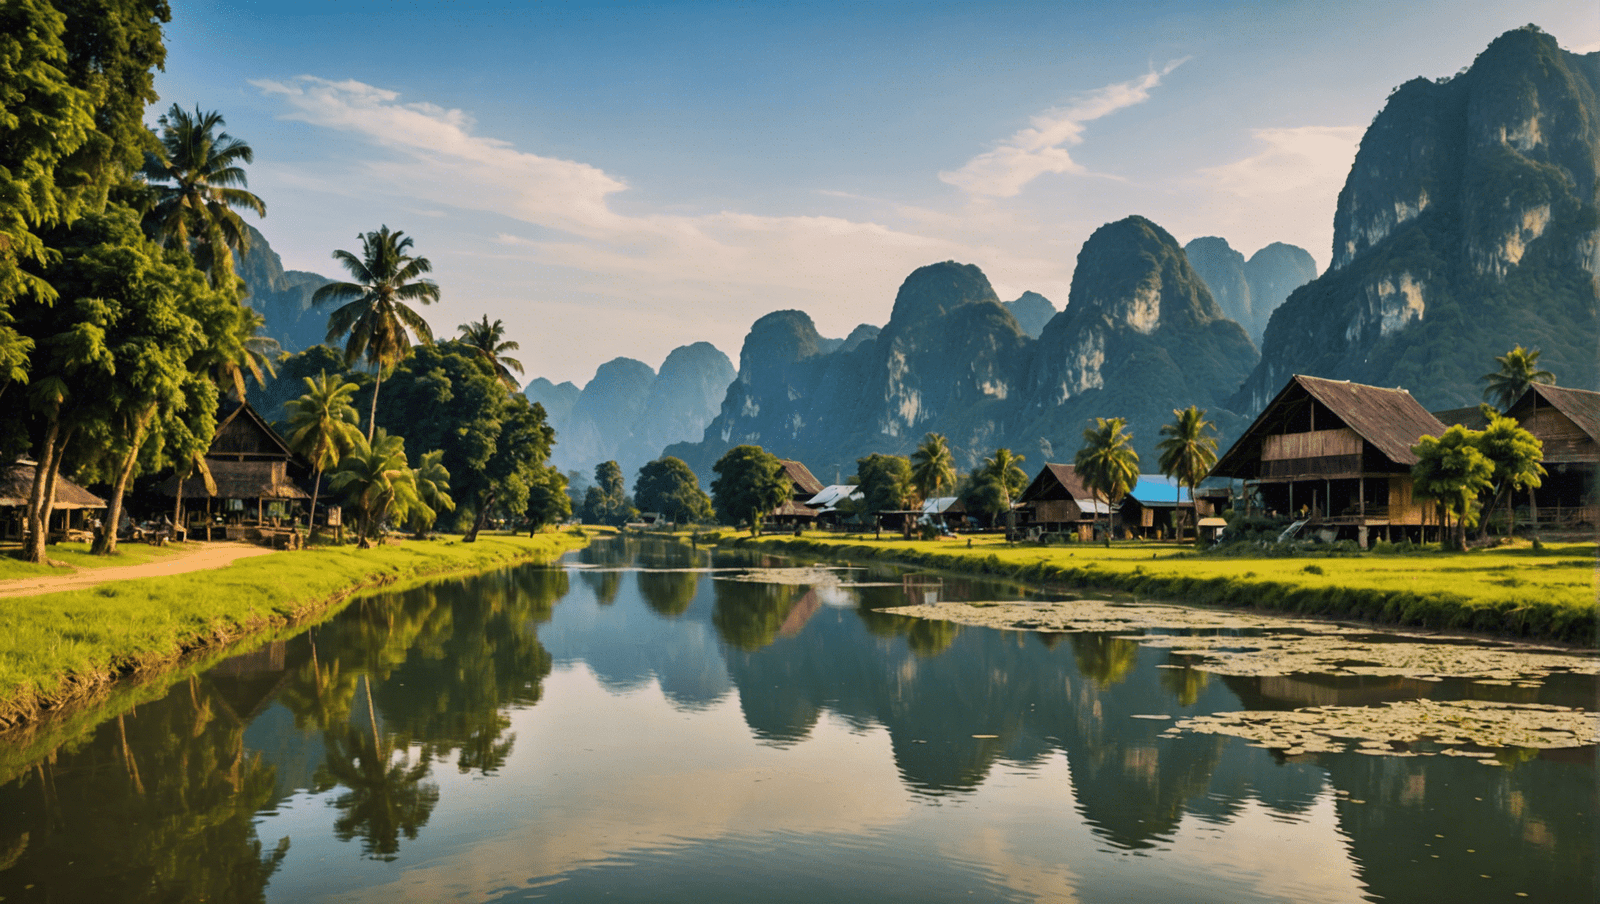 découvrez vang vieng, un joyau naturel du laos où l'aventure rencontre la sérénité. notre guide de voyage vous emmène au cœur de la nature et de l'aventure pour une expérience inoubliable.